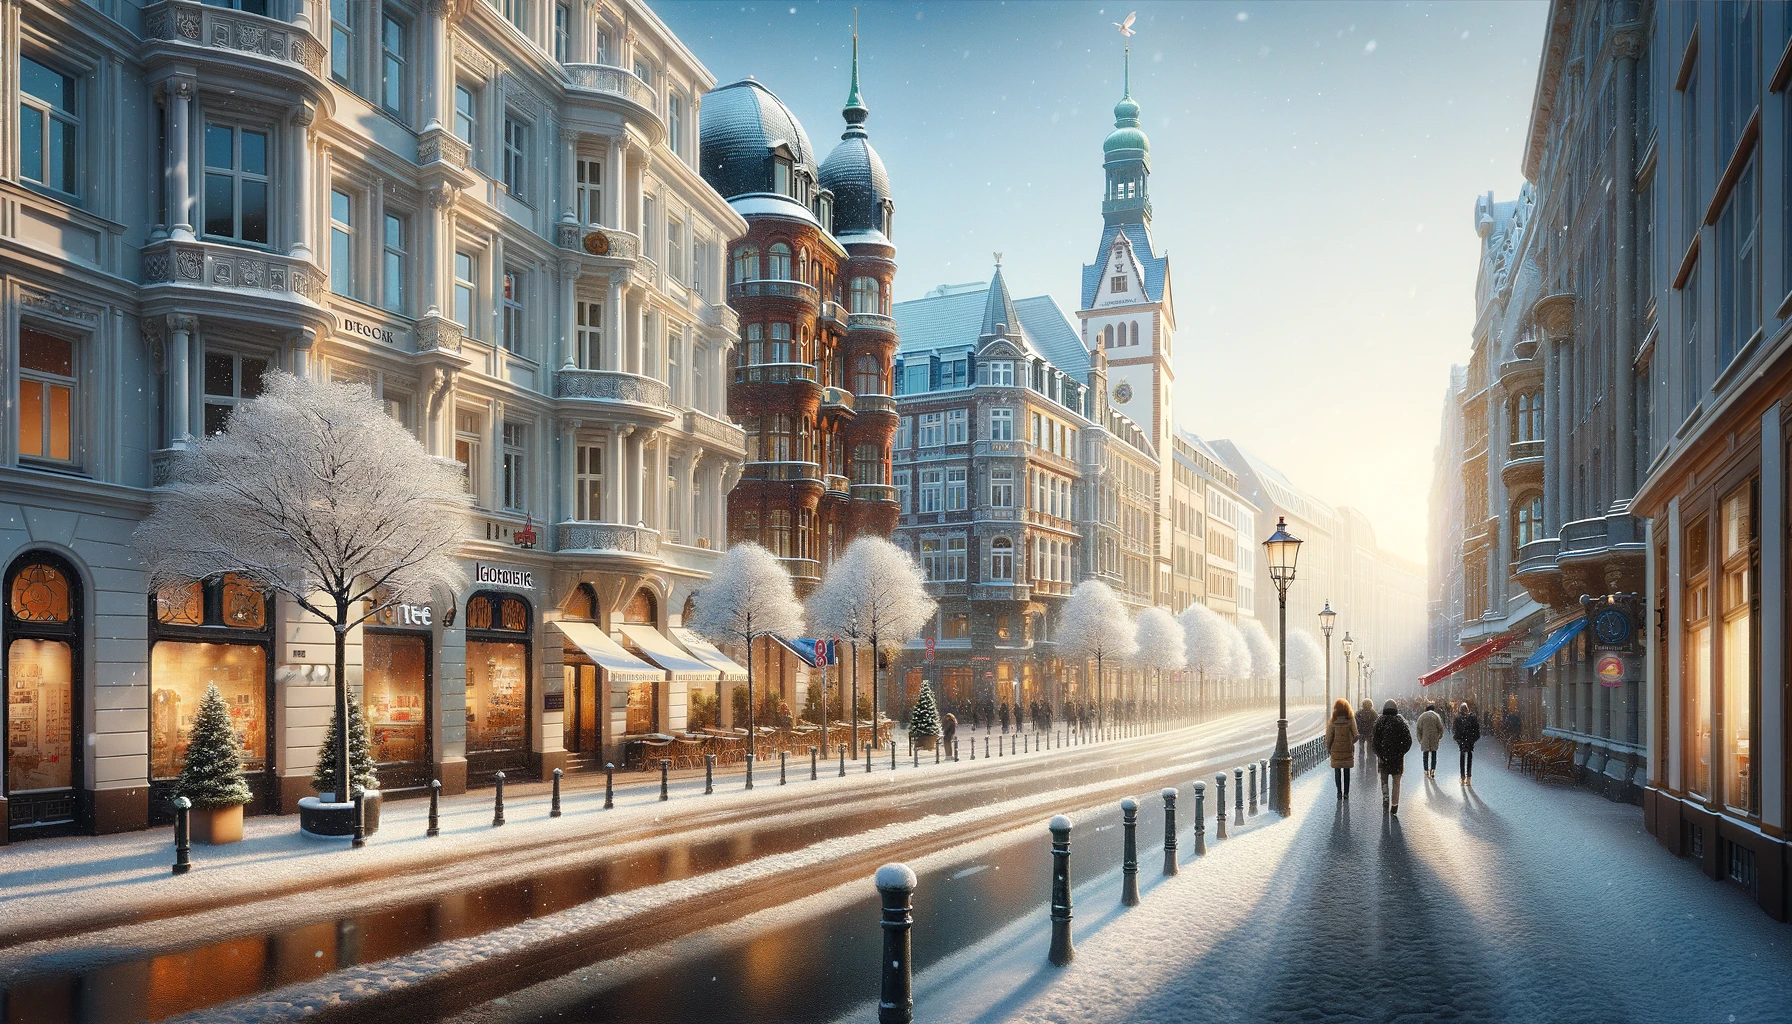 Zimowy widok Hamburga z pokrytymi śniegiem ulicami i historycznymi budynkami